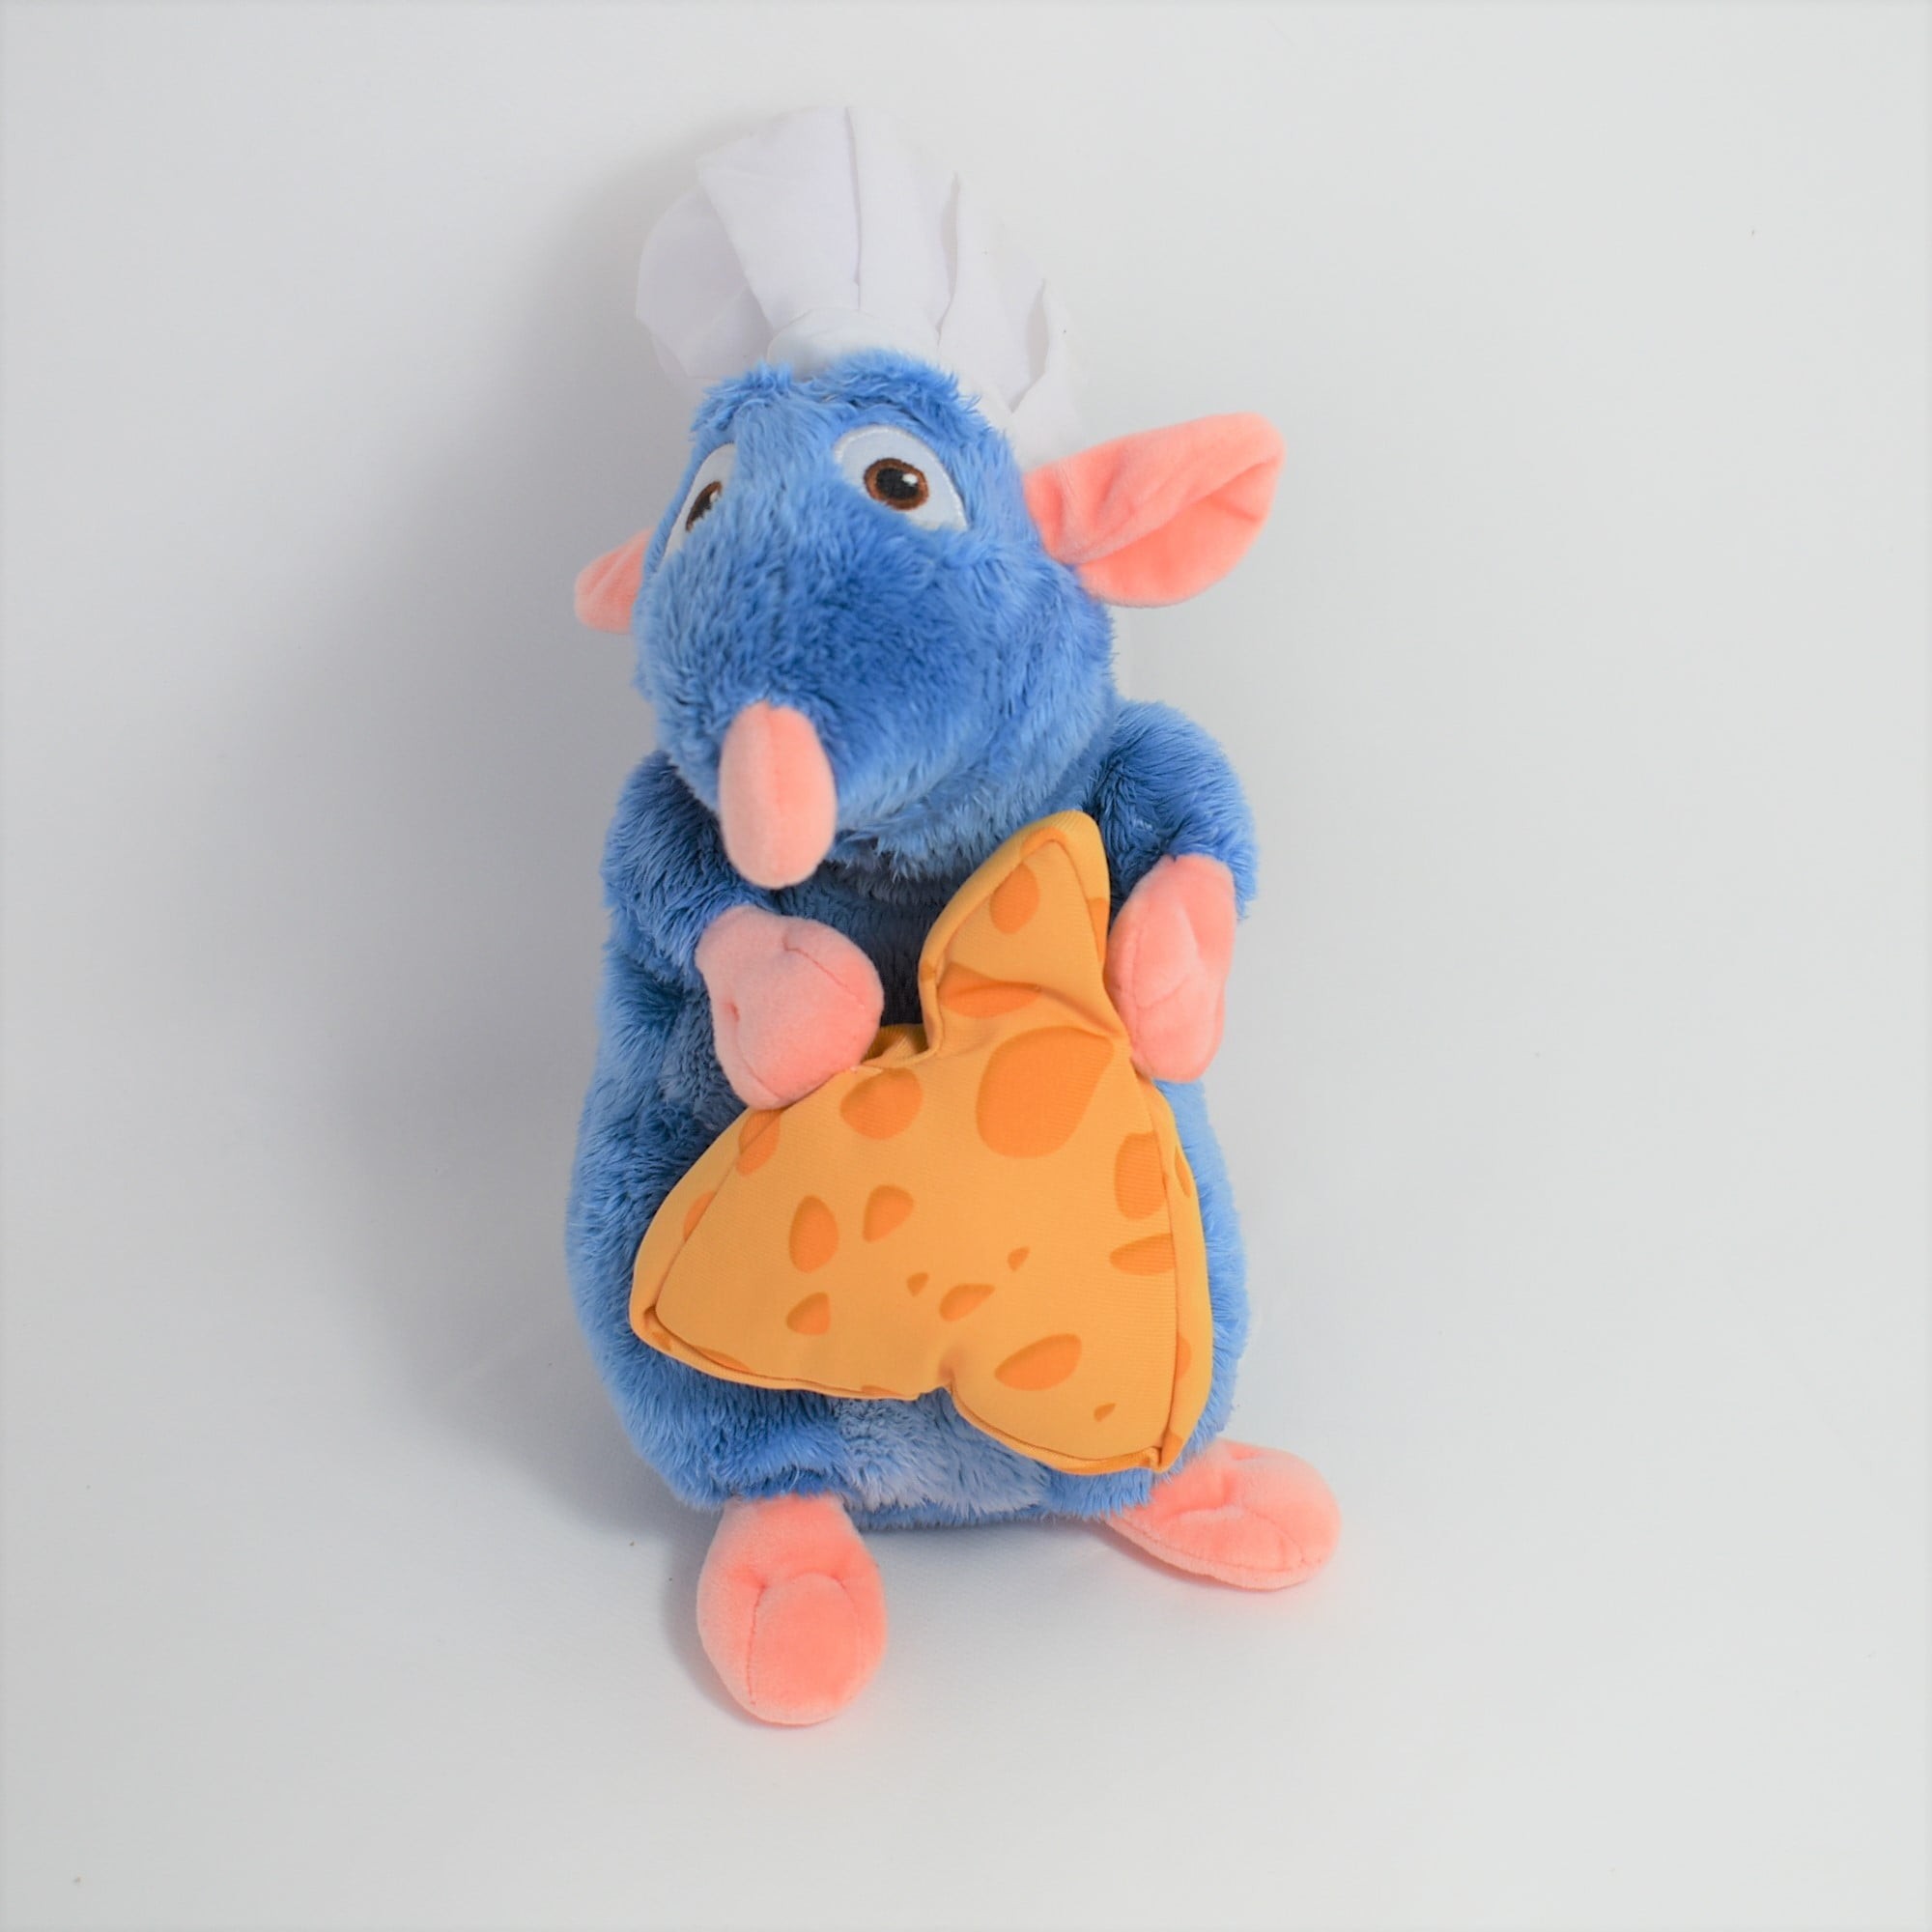 Peluche ratatouille Remy NICOTOY avec fromage bleu 25 cm - DisneySh